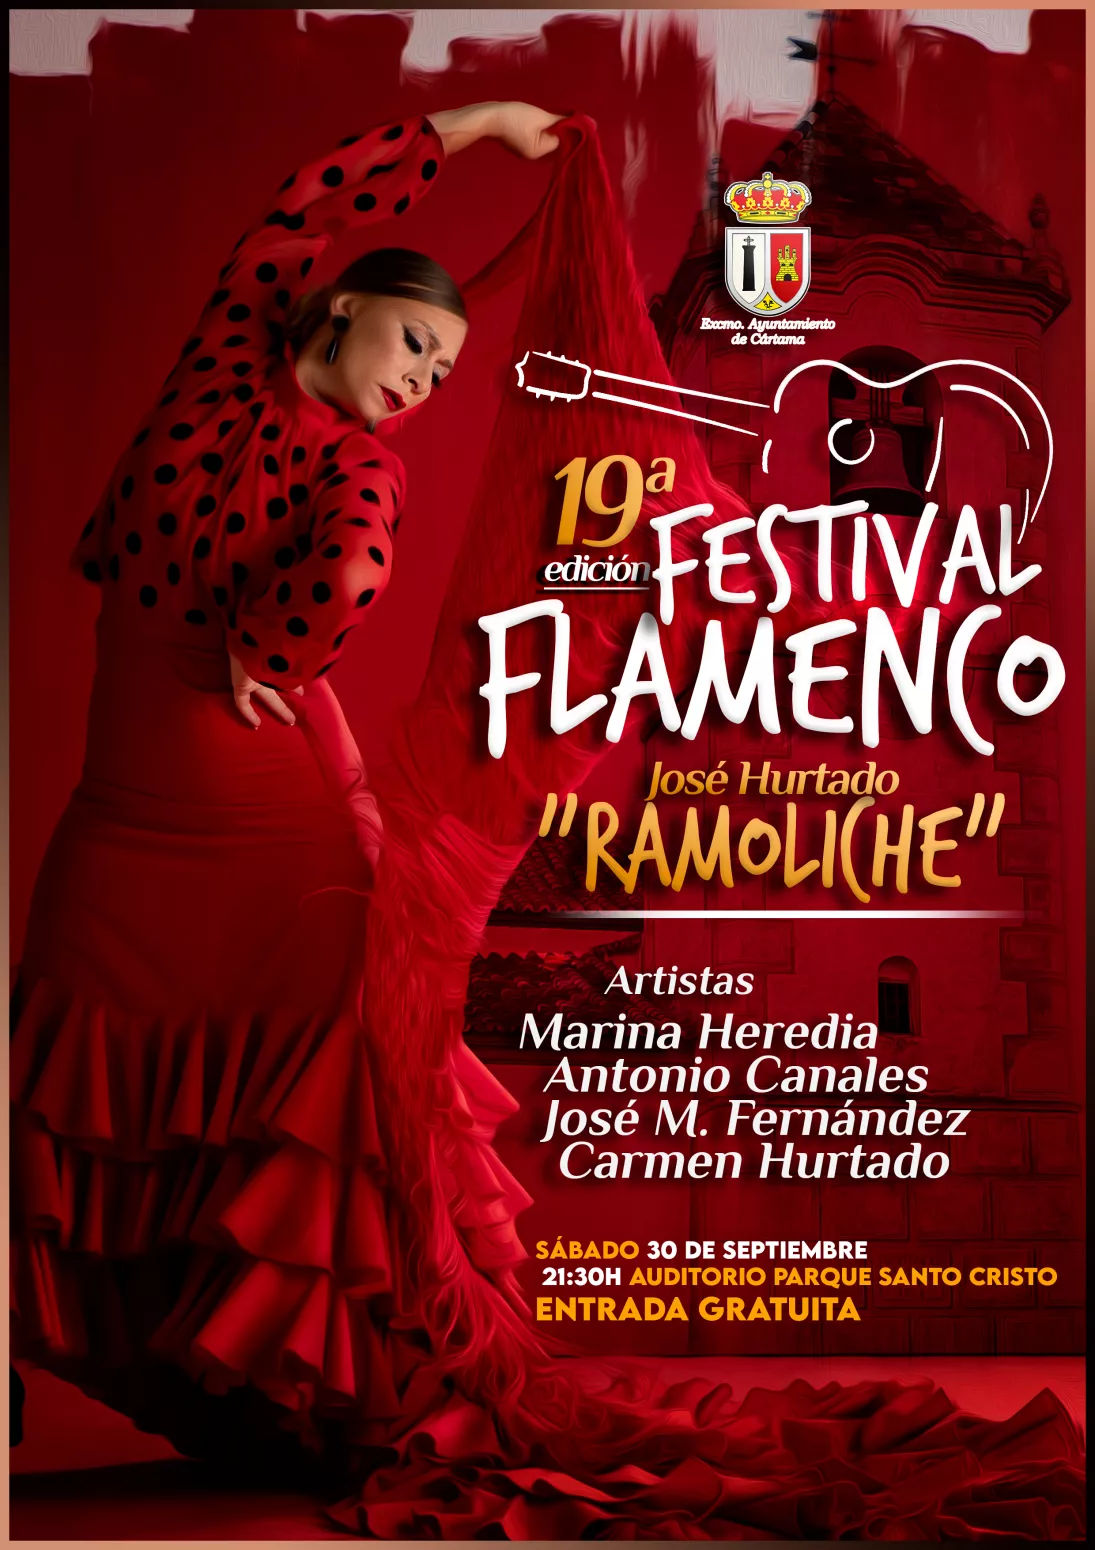 Festival Flamenco Jose Hurtado Ramoliche